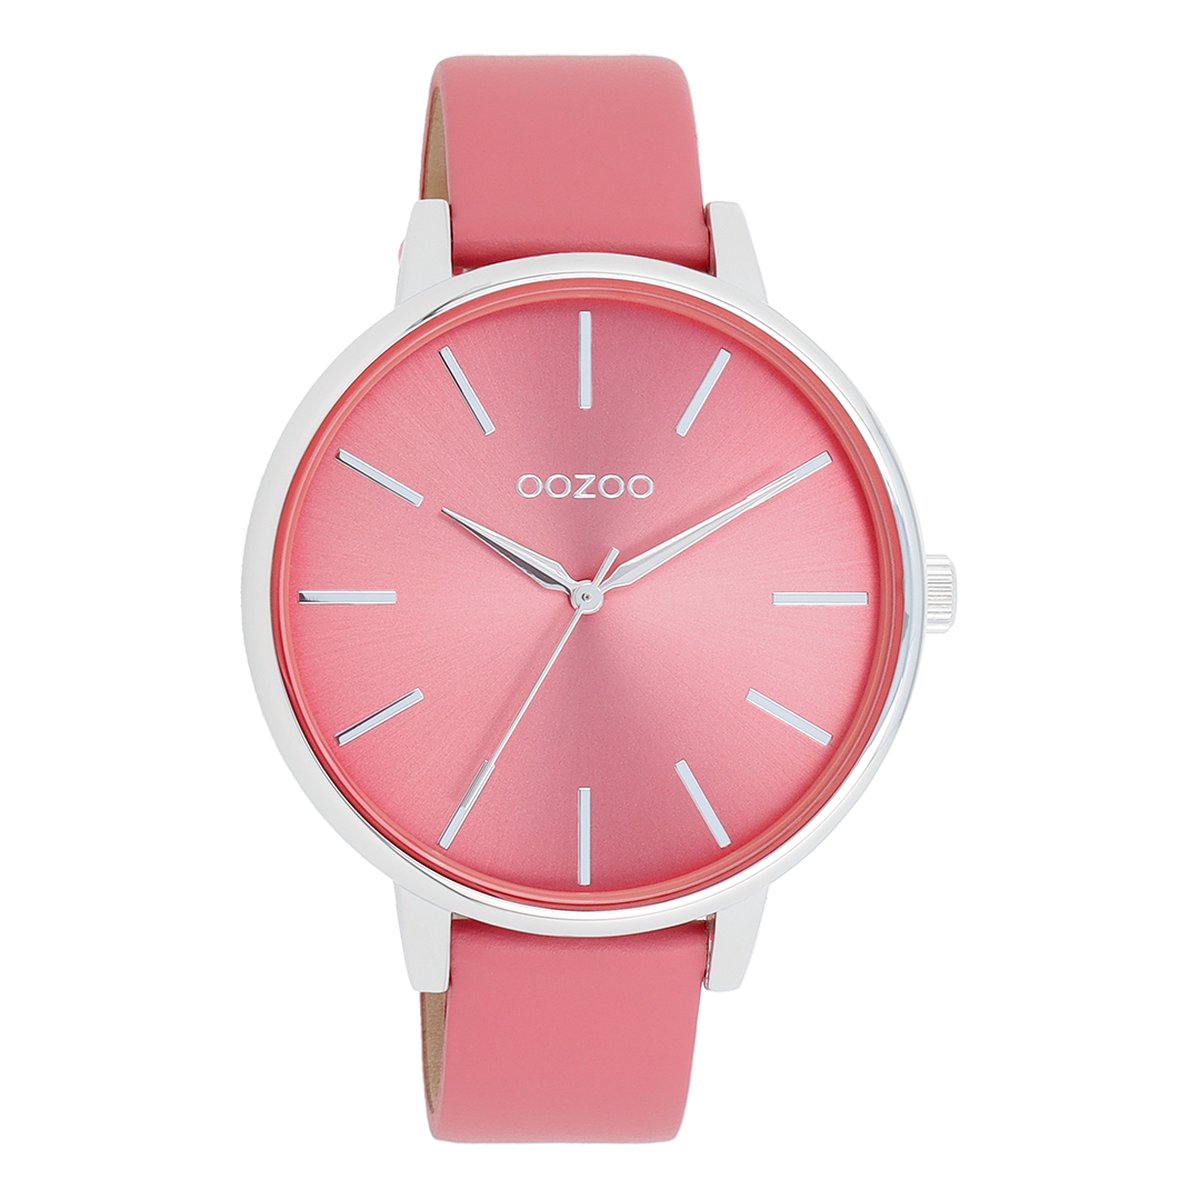 OOZOO Timepieces - Zilverkleurige OOZOO horloge met roze schelpkleurige leren band - C11295